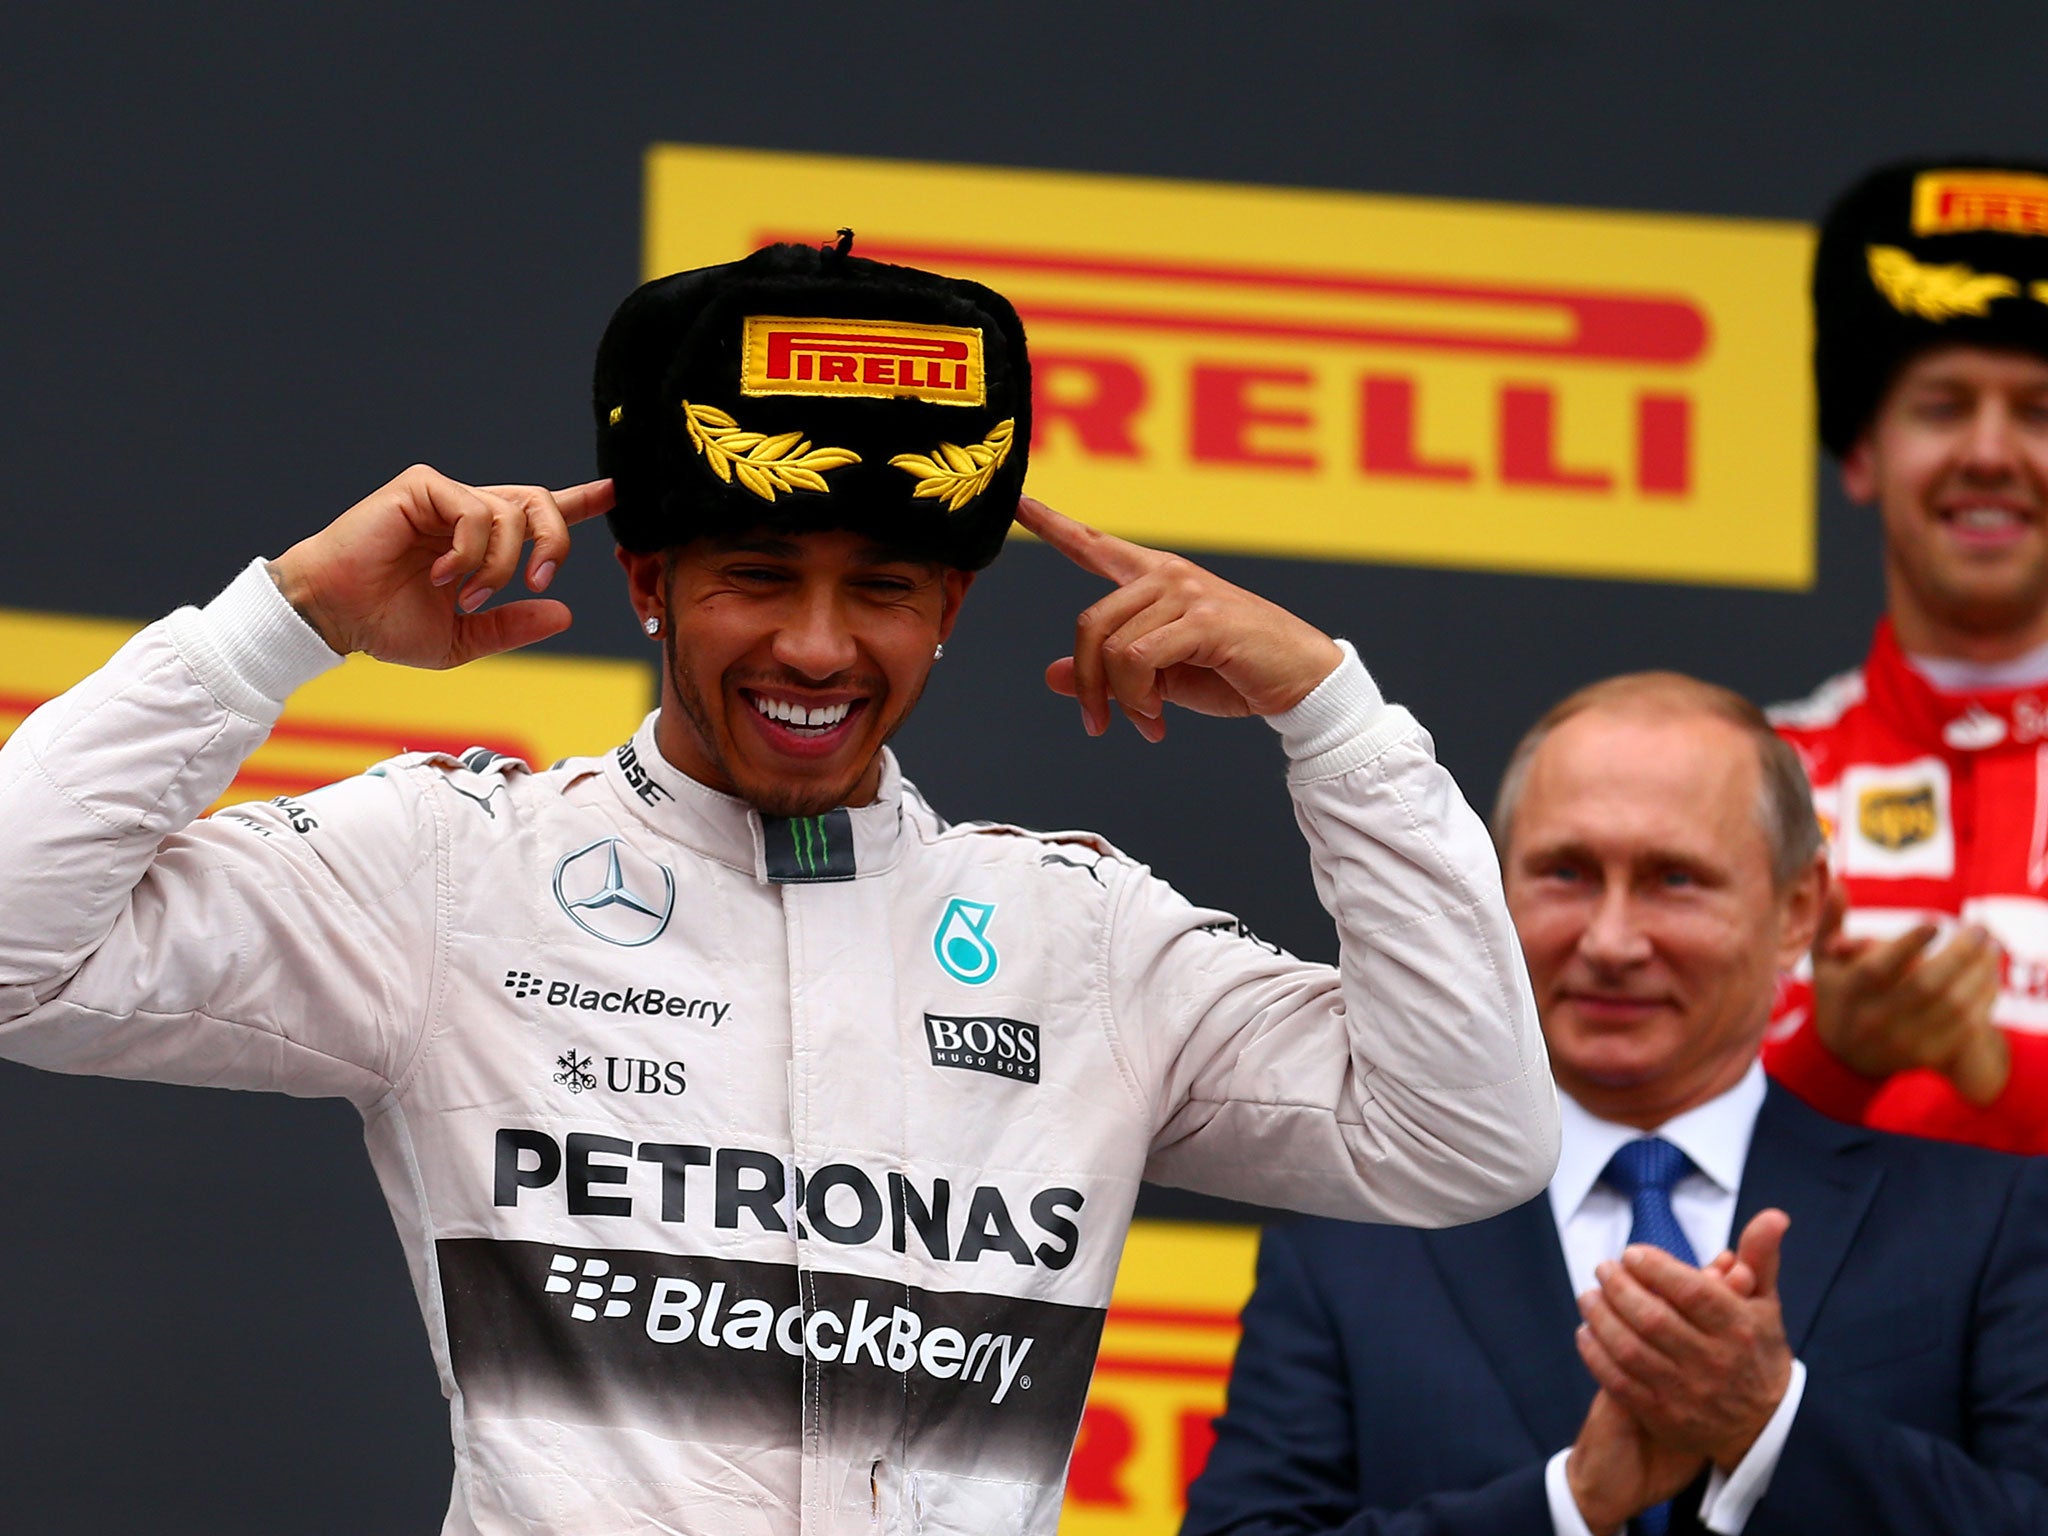 Lewis Hamilton celebrates his win in Sochi